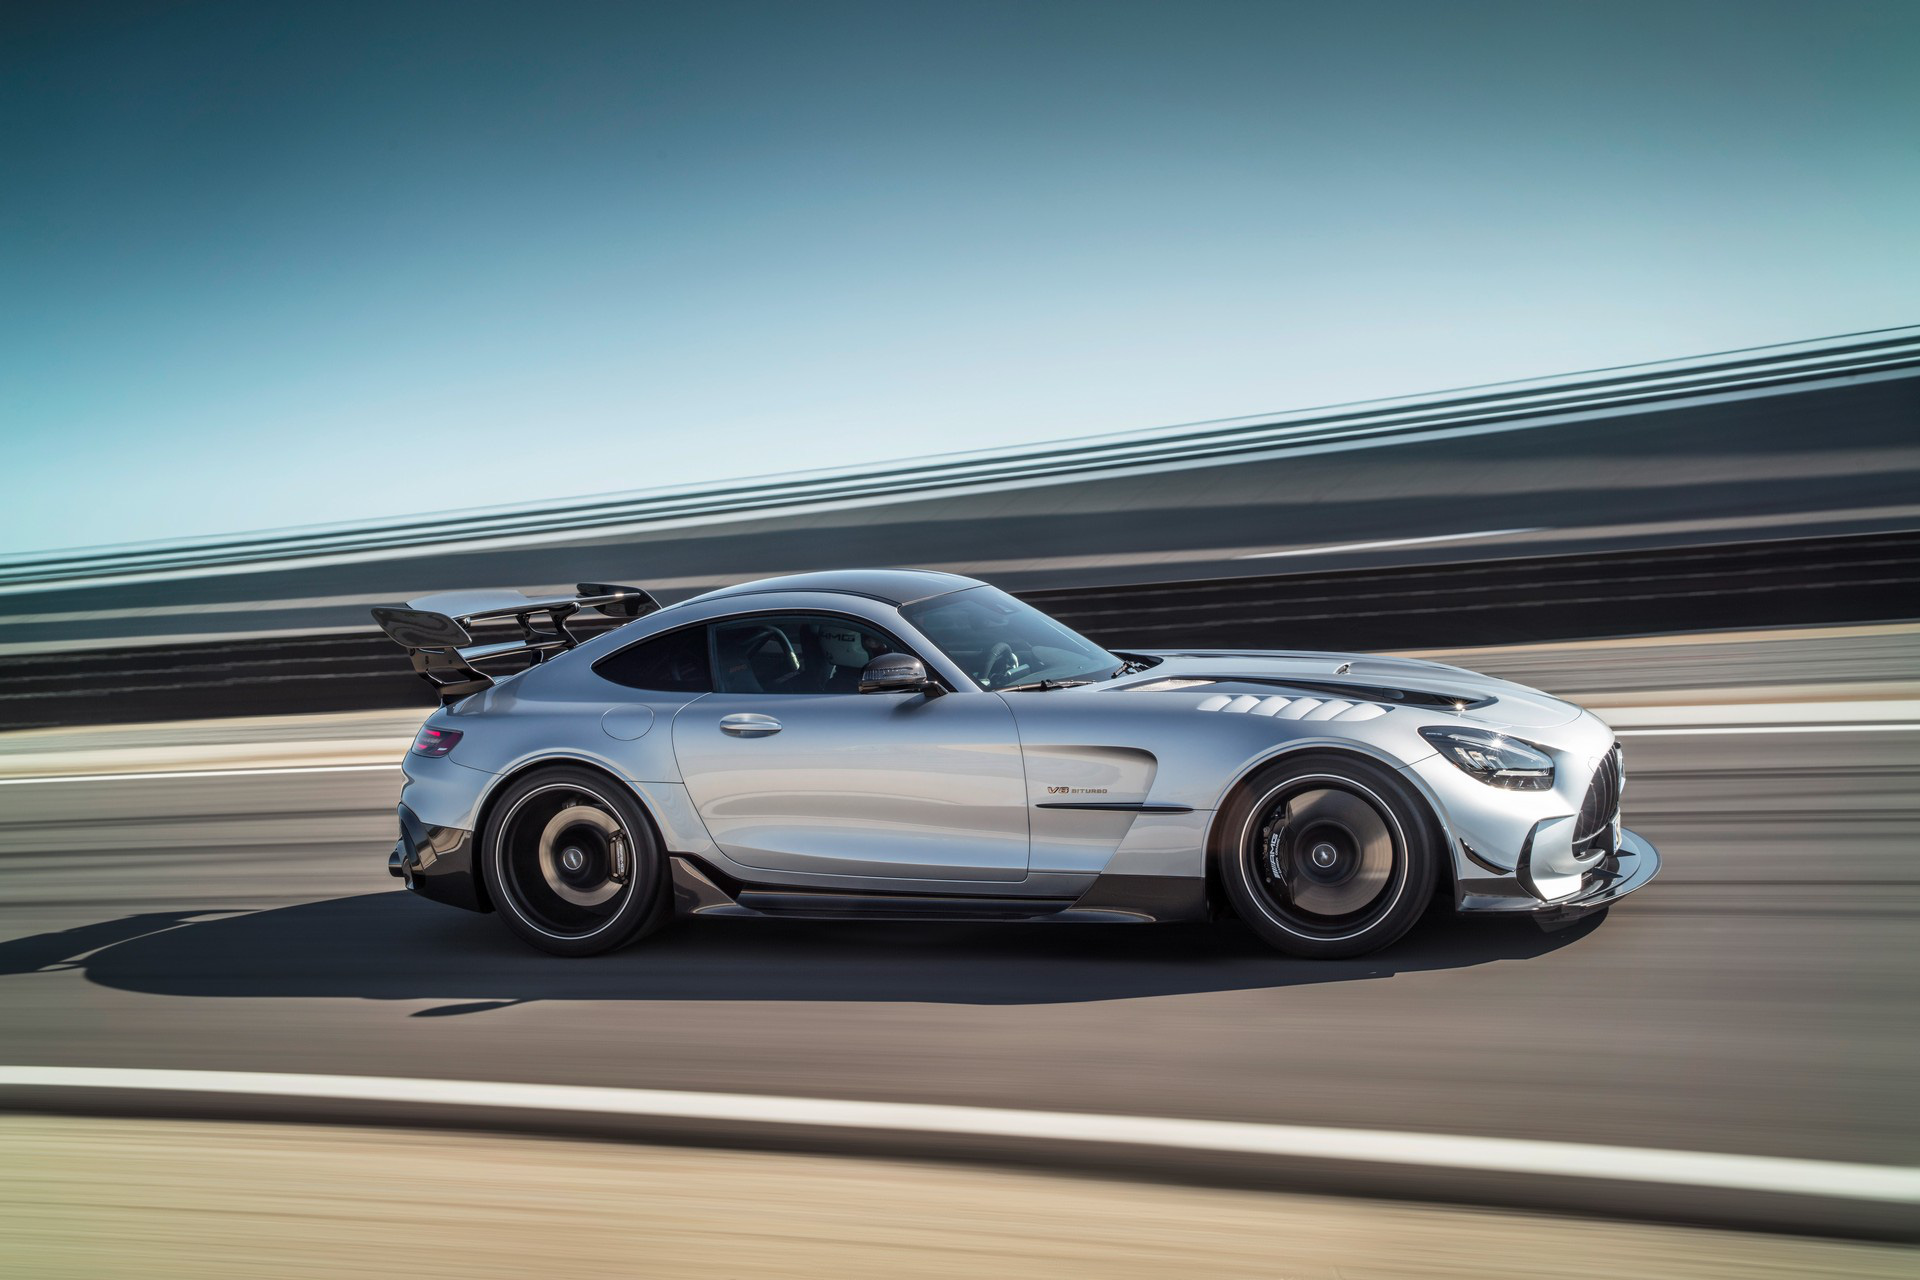 Ra mắt Mercedes-AMG GT Black Series - Siêu xe đích thực với công suất khủng, tốc độ cao - Ảnh 4.